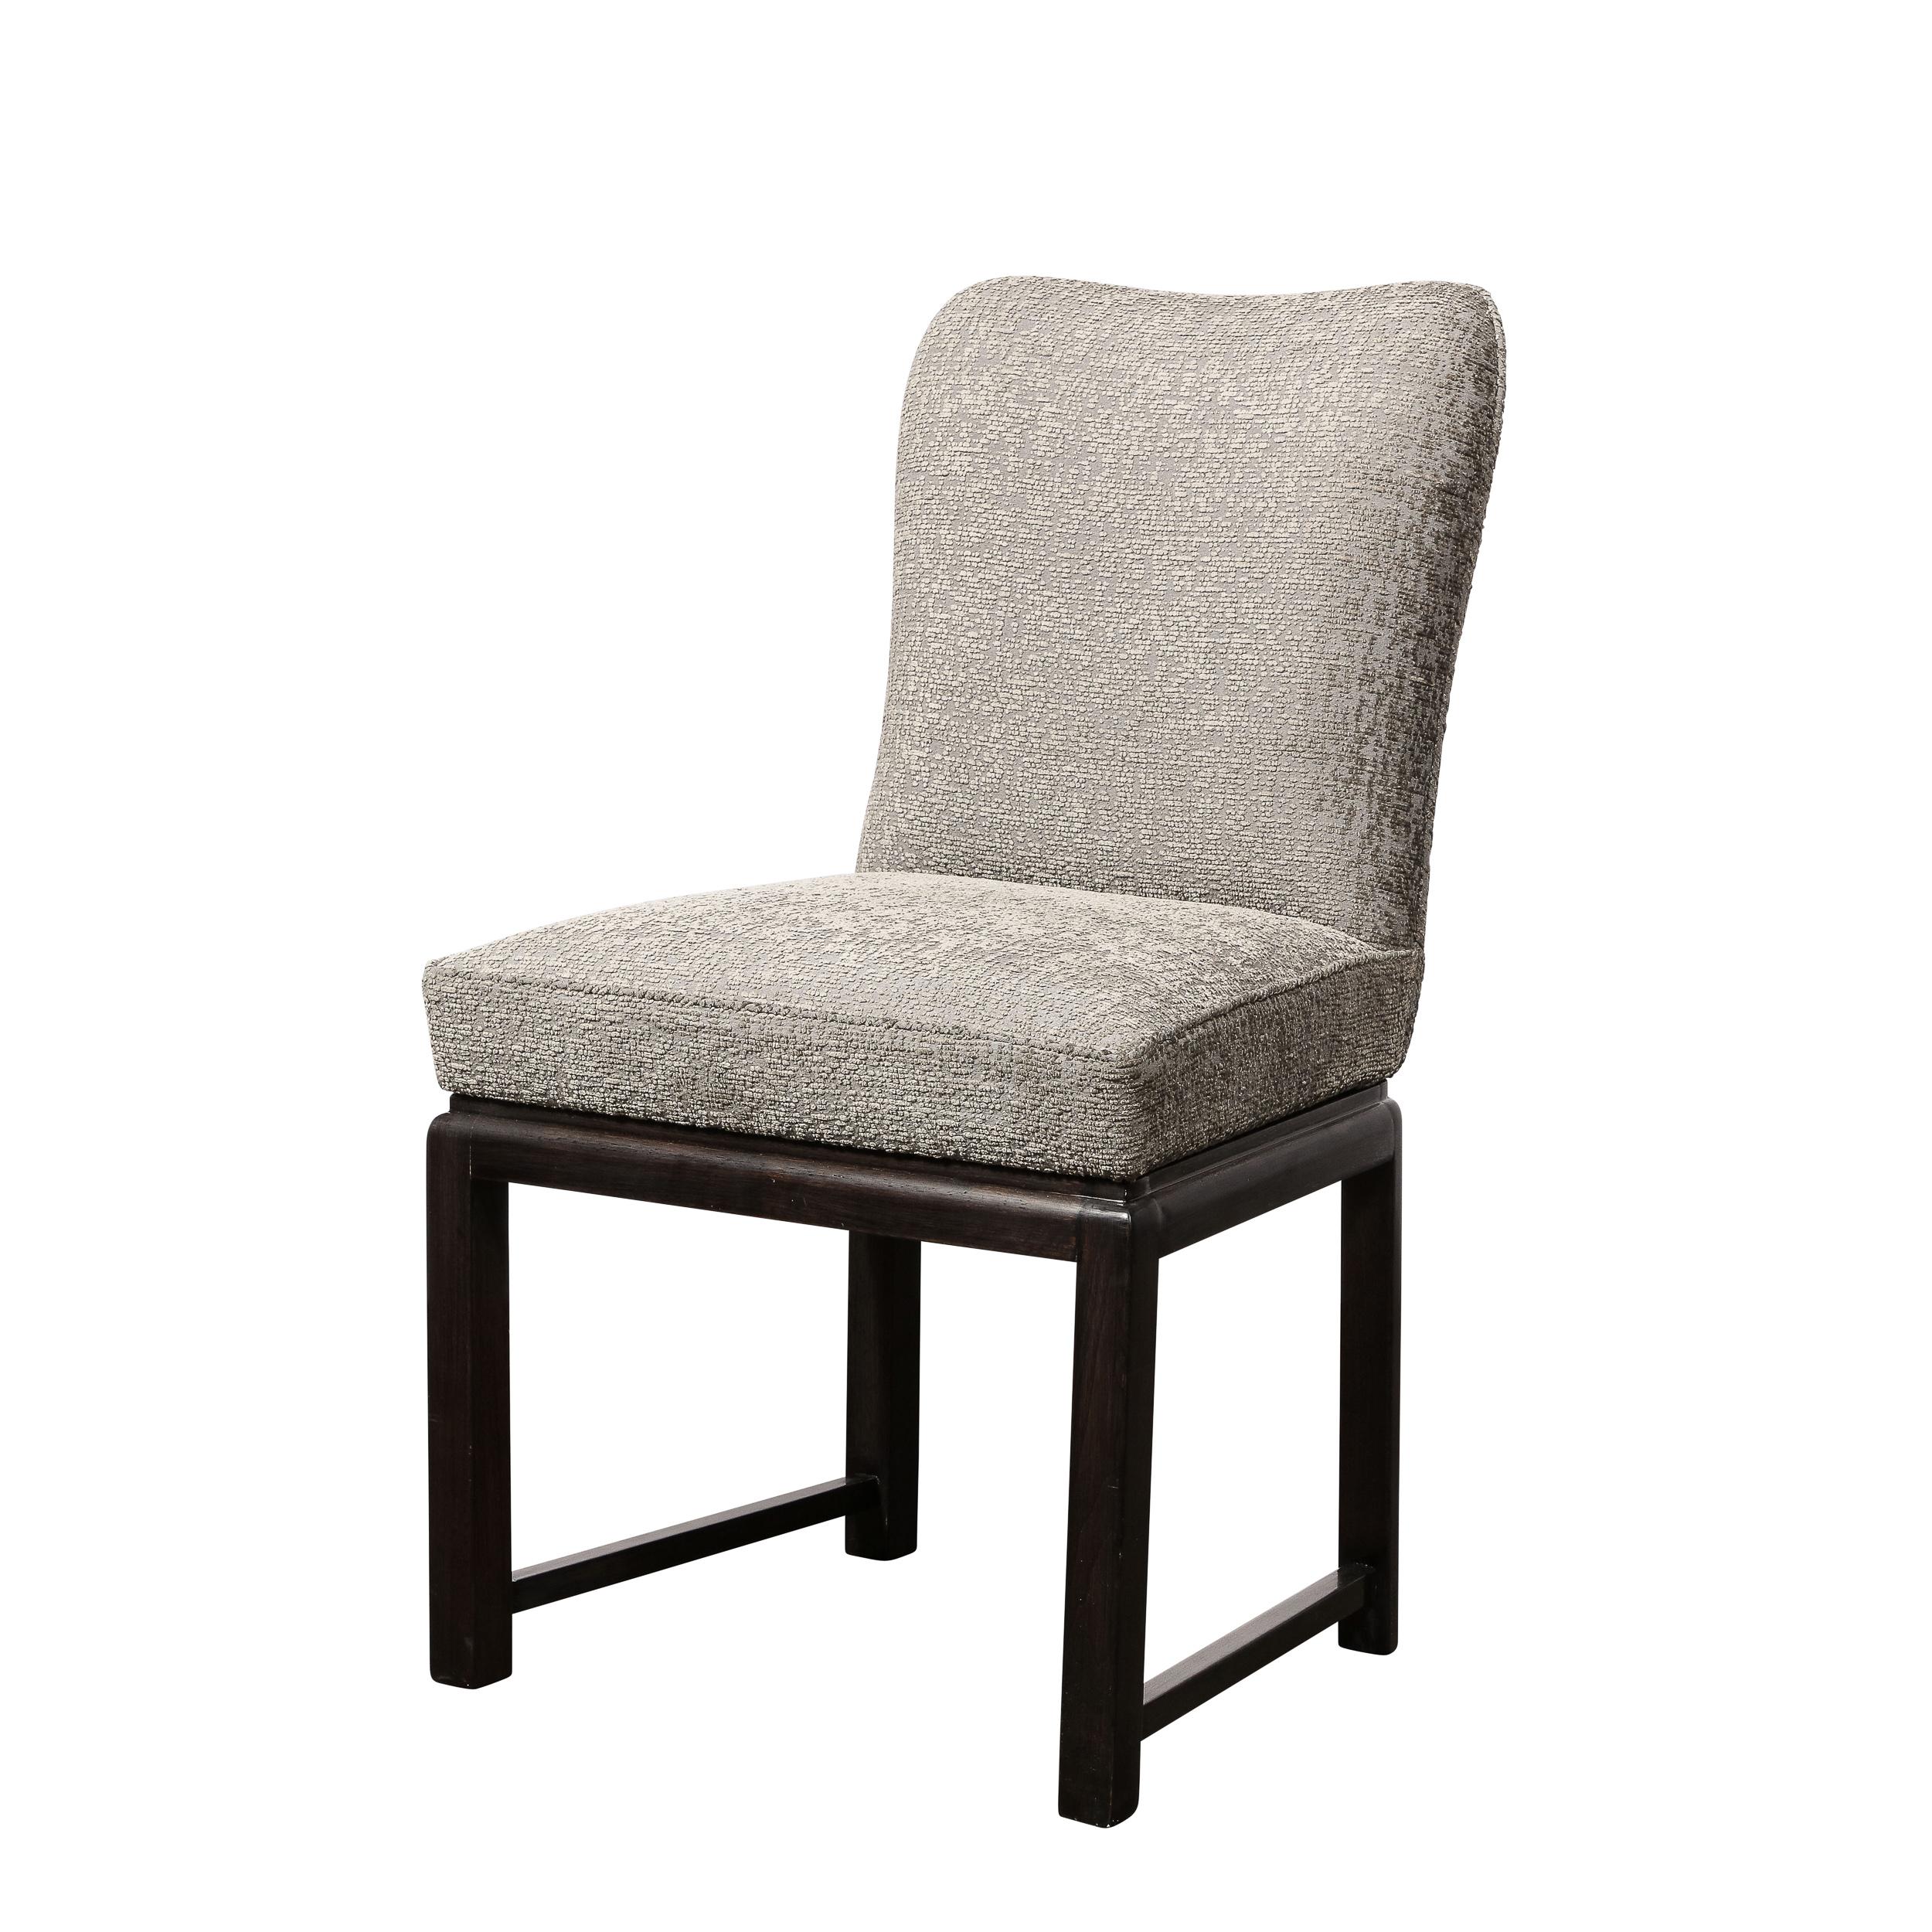 Dieses elegante Paar von Mid Century  Stühle wurden in den Vereinigten Staaten um 1950 realisiert. Sie haben zylindrische Beine mit geradlinigen Querstreben aus ebonisiertem Nussbaum. Die Oberseite der Rückseiten ist mit einem subtilen,